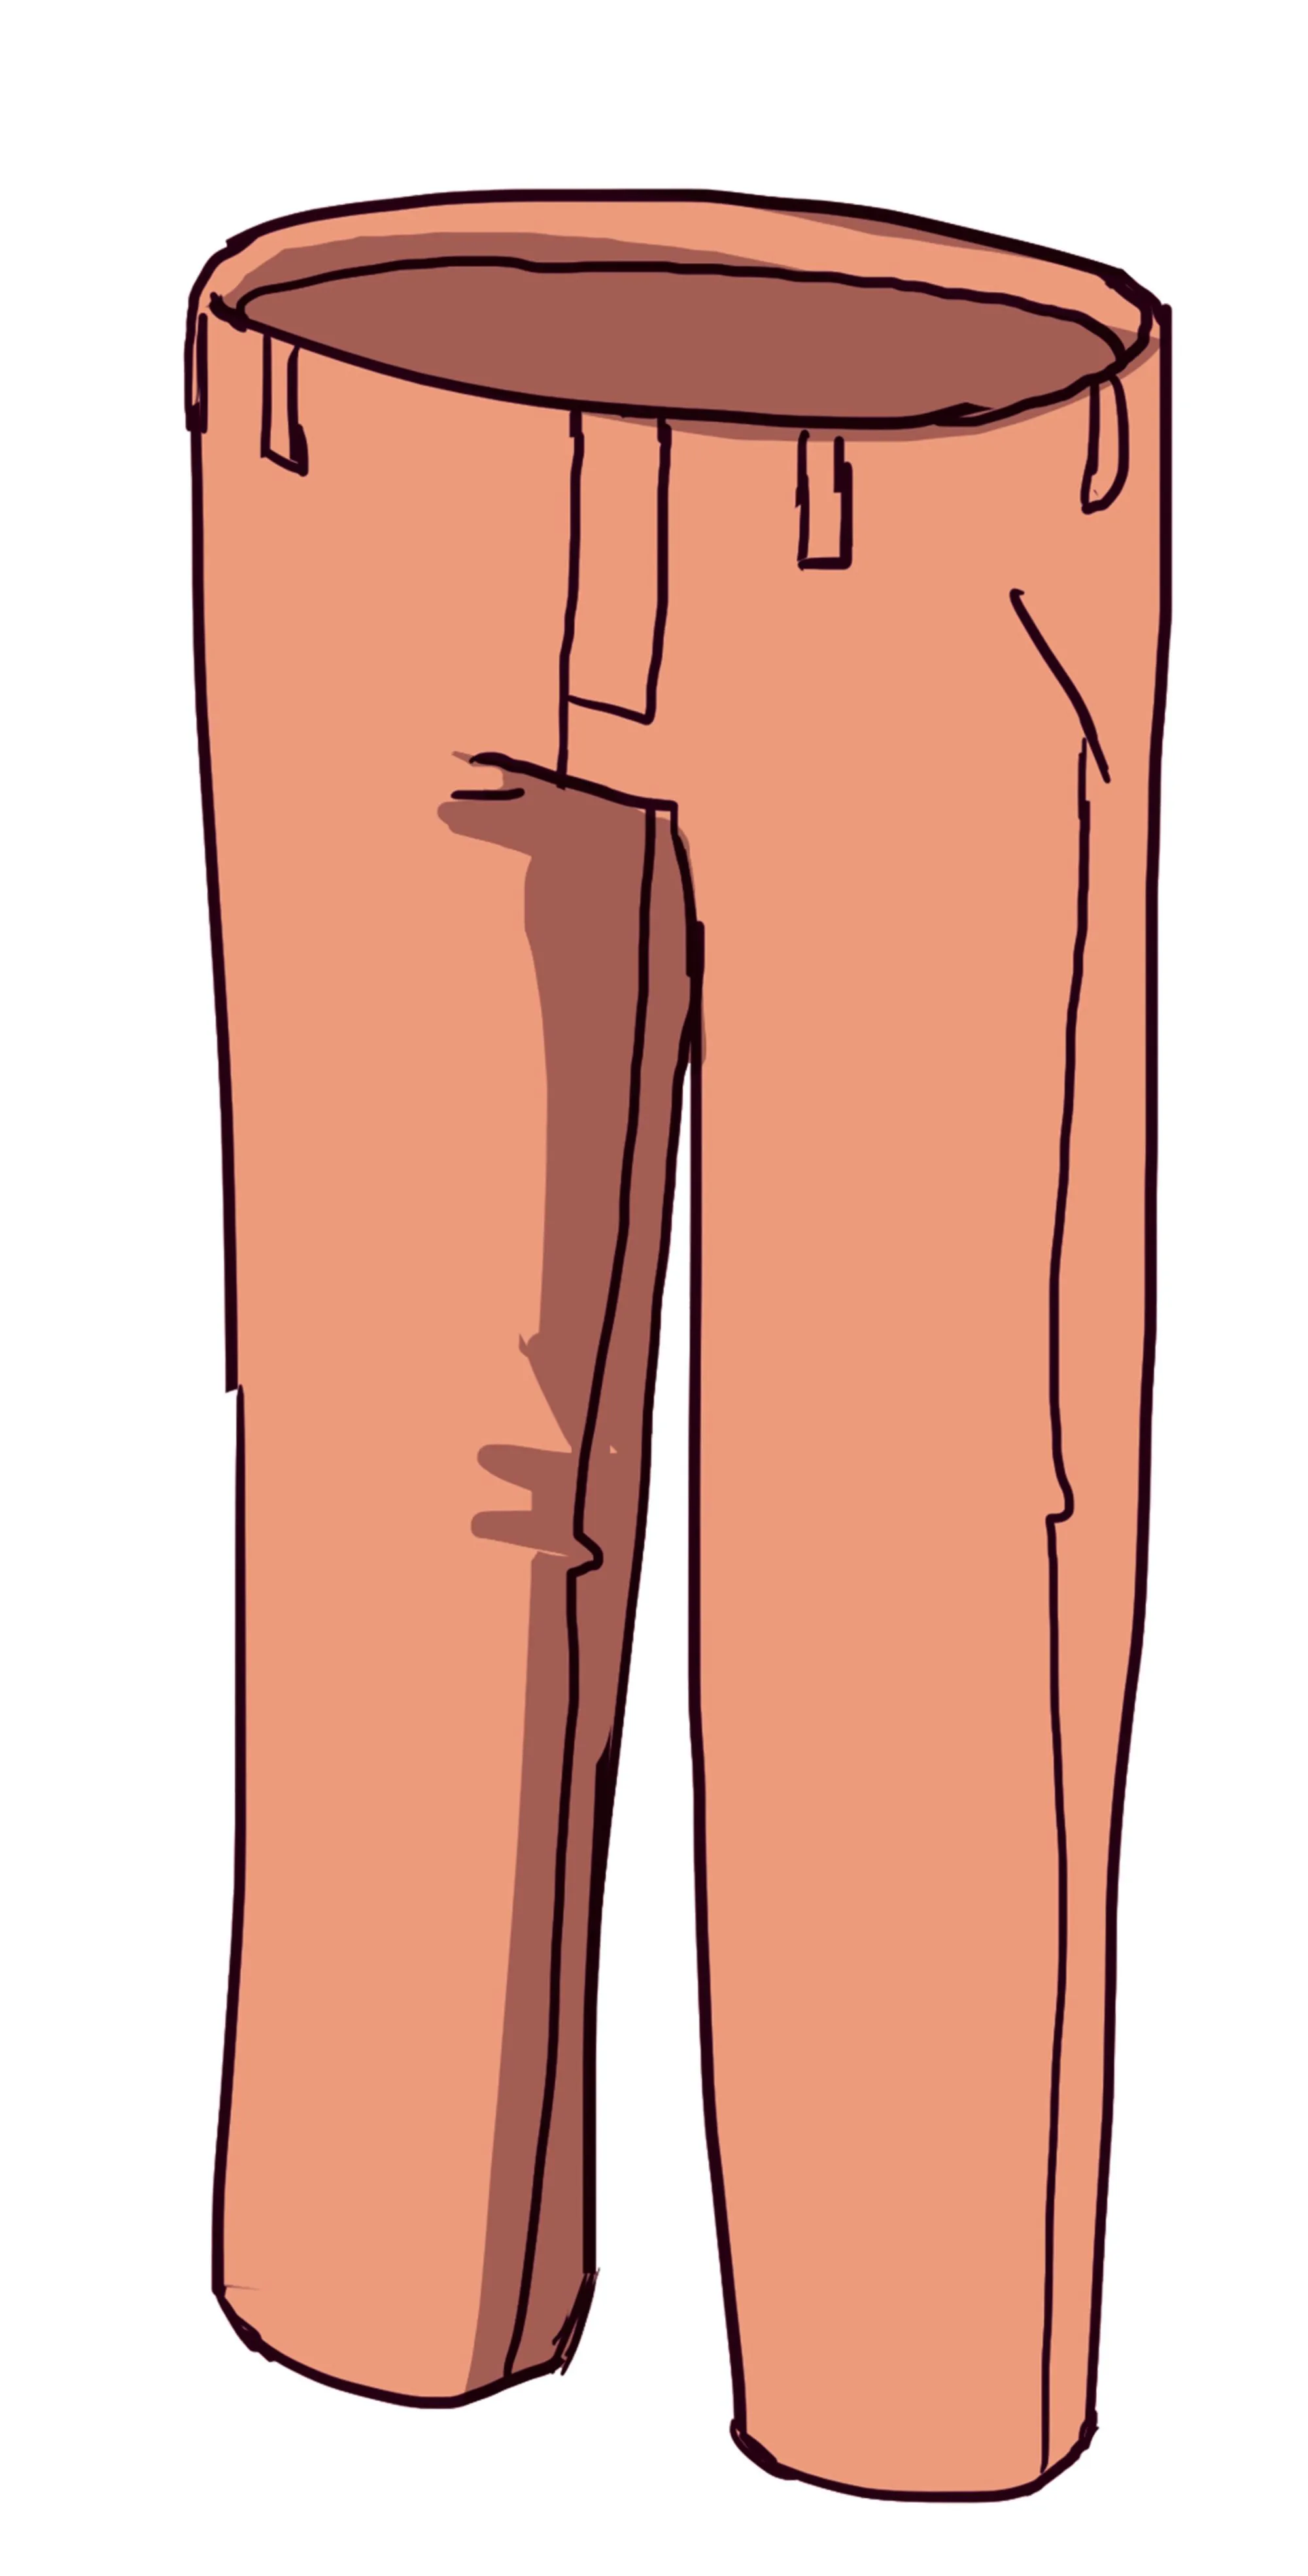 Un pantalon